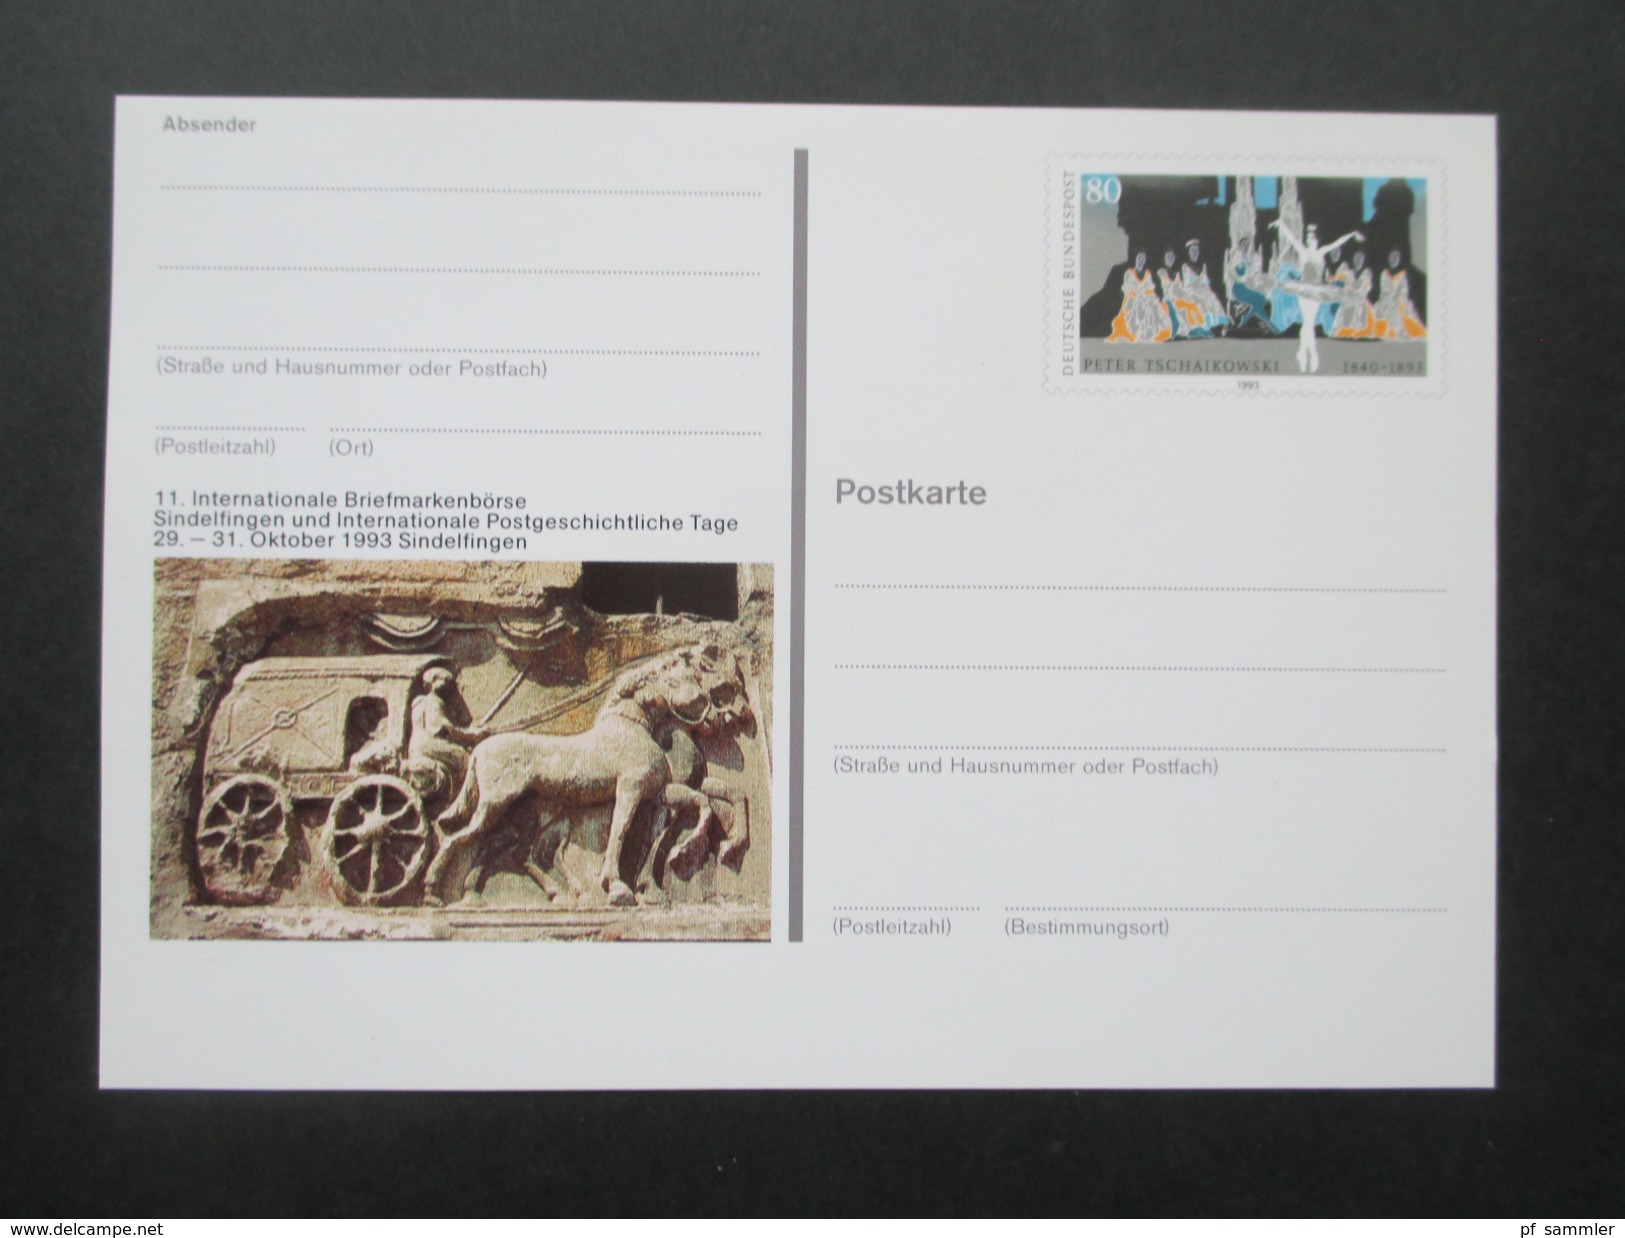 BRD Ganzsachen 1980 - 98 Sonderpostkarten! 82 Stück! Briefmarken Ausstellungen Usw. Ungebraucht / Guter Zustand! - Illustrated Postcards - Mint